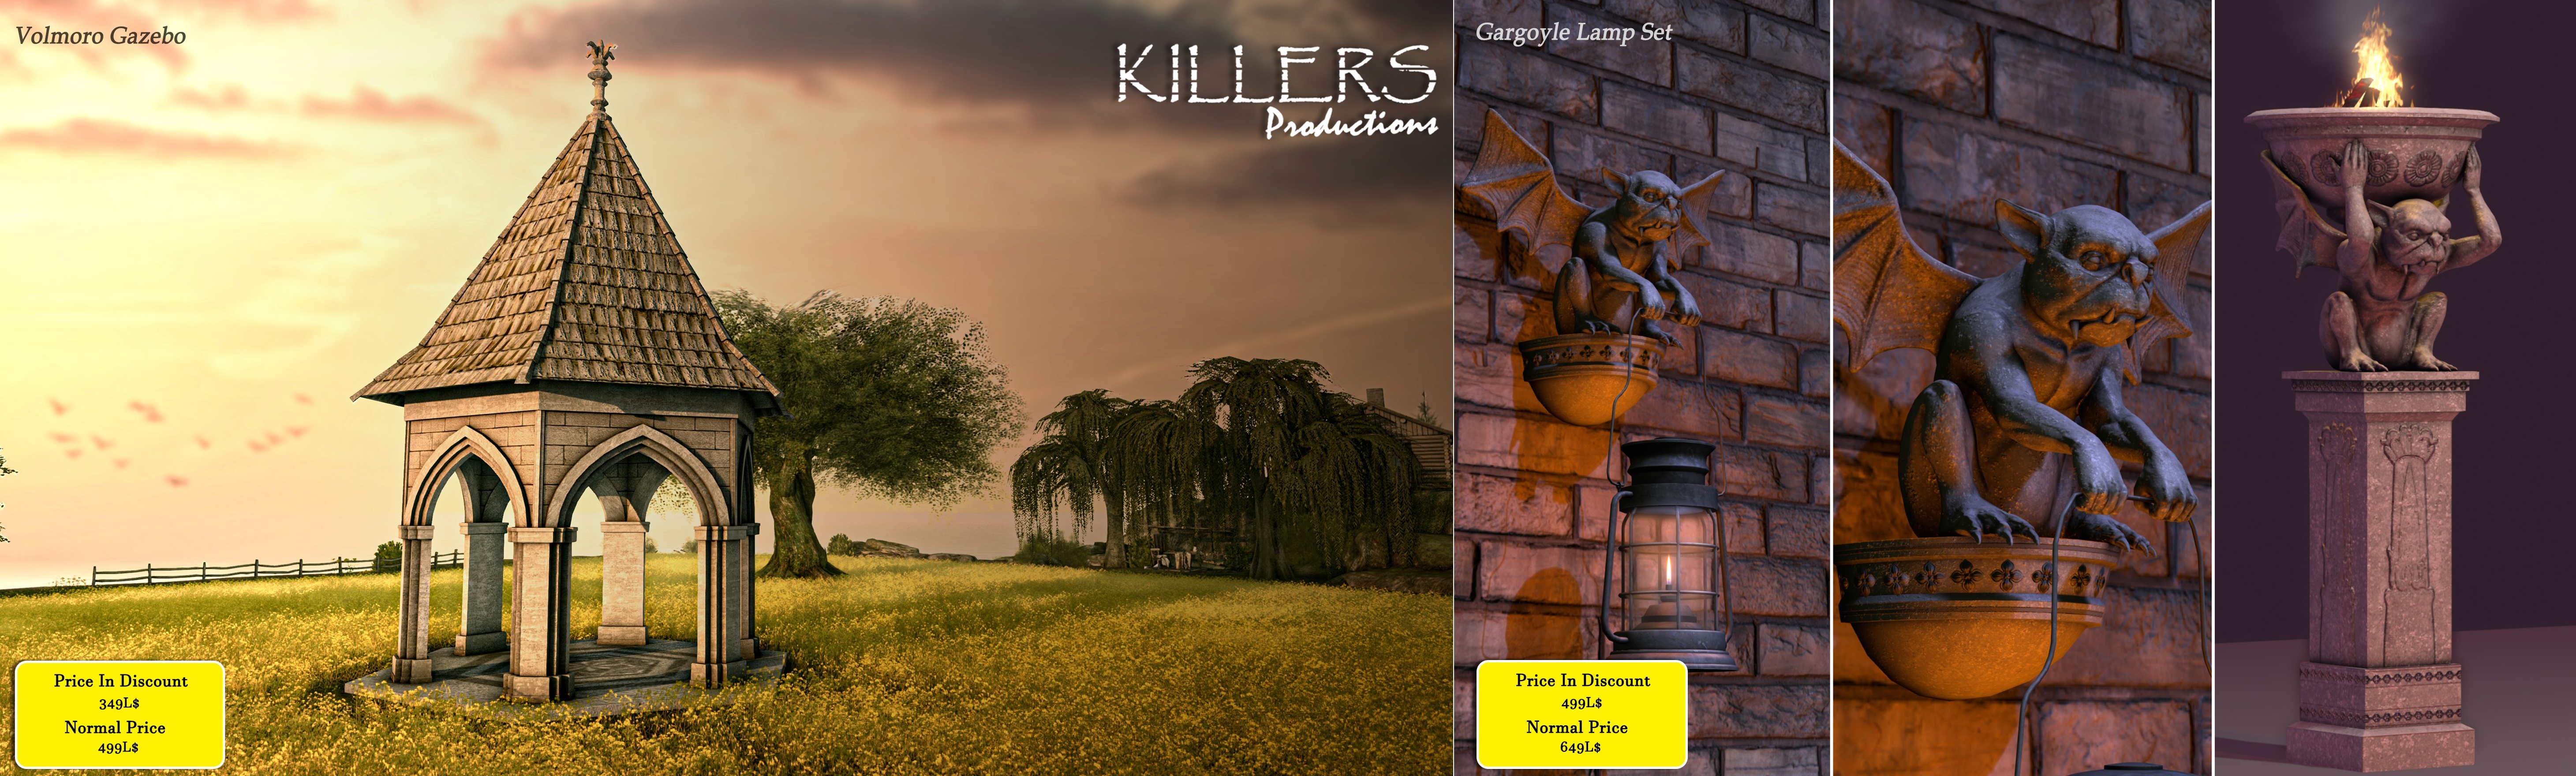 Killers Productions – Volmoro Gazebo & Gargoyles